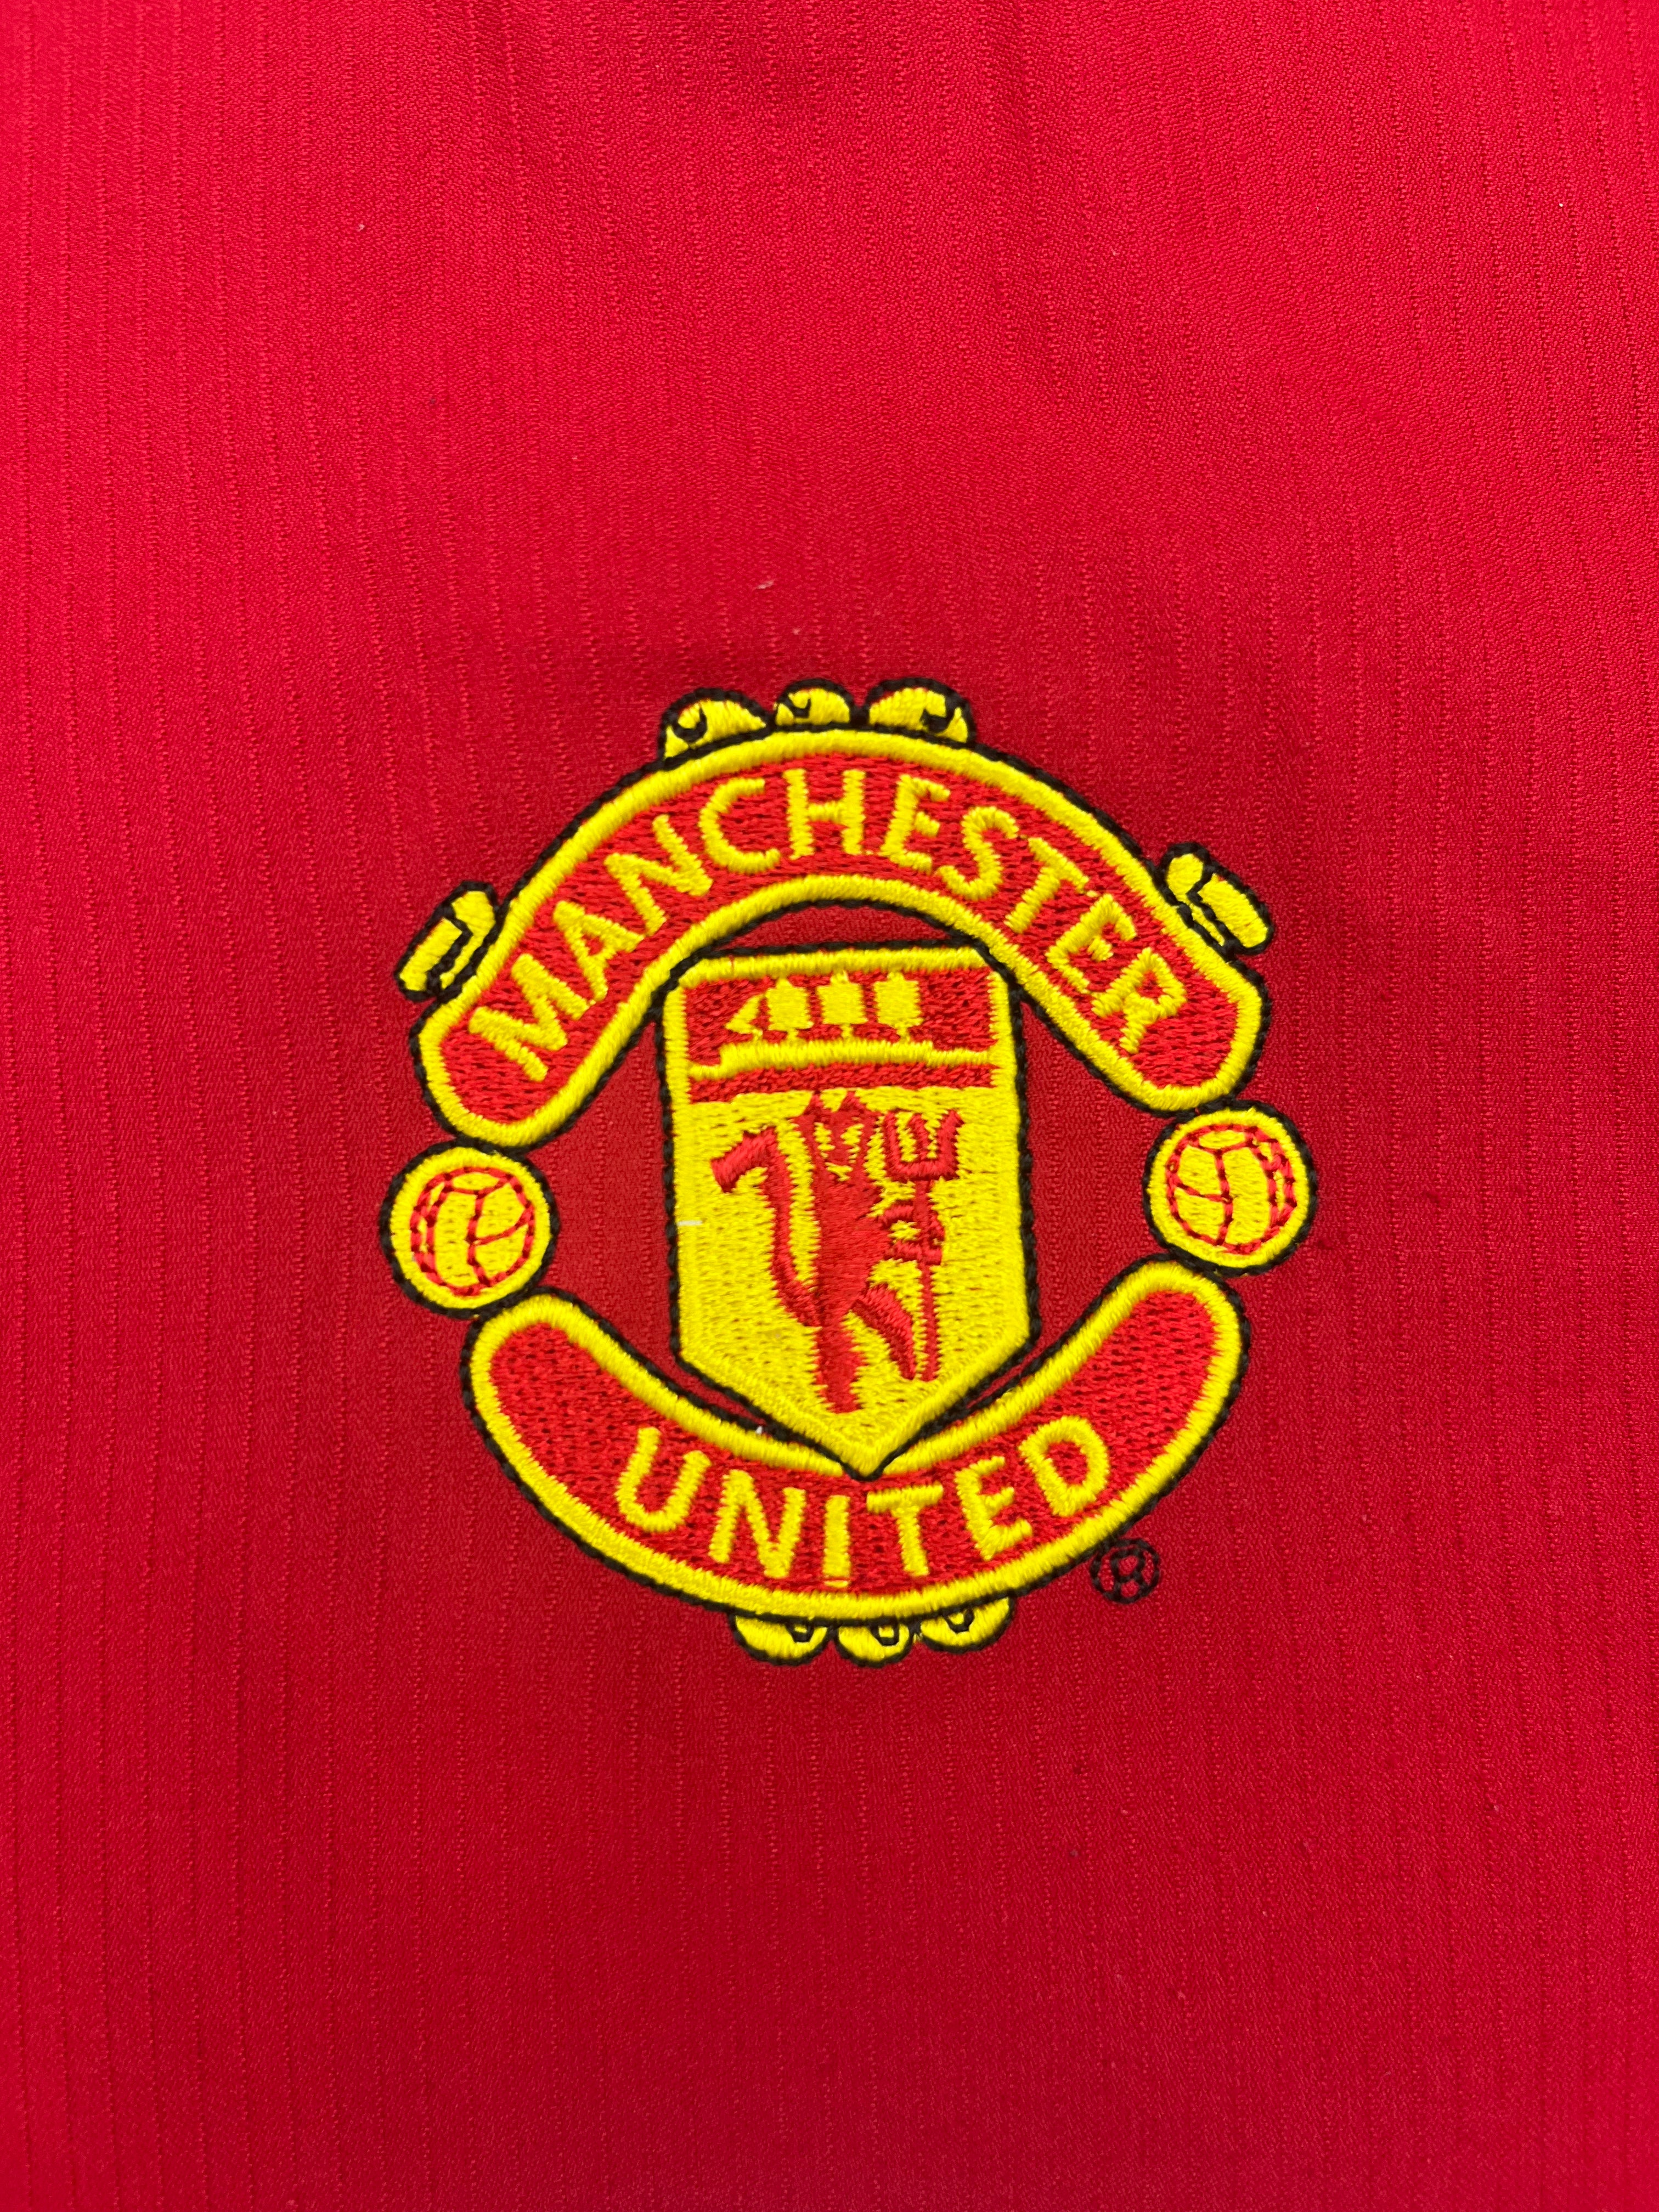 Camiseta local del Manchester United 2004/06 (L) 8,5/10